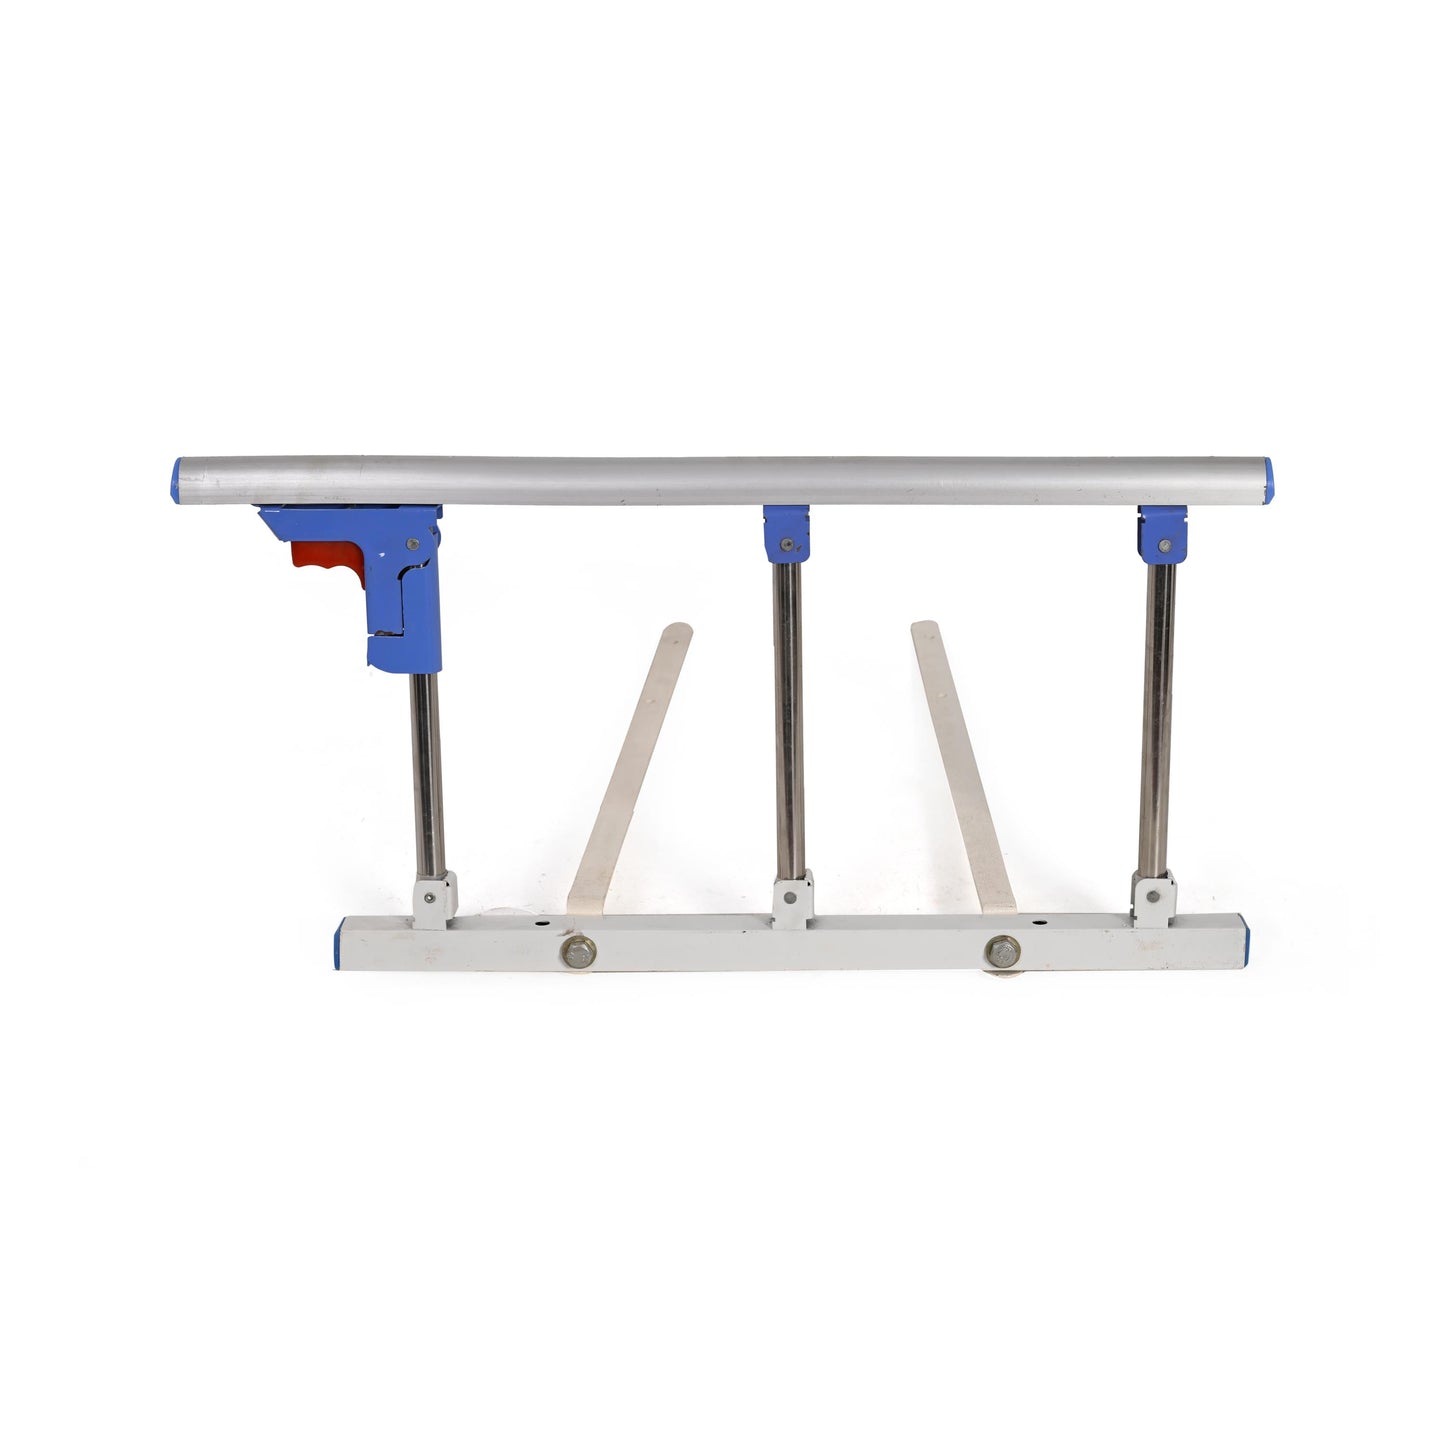 Morecare Aluminum Collapsible Bed Side Rails for Elderly Safety Slides Under Mattress (Pair) - Lavender